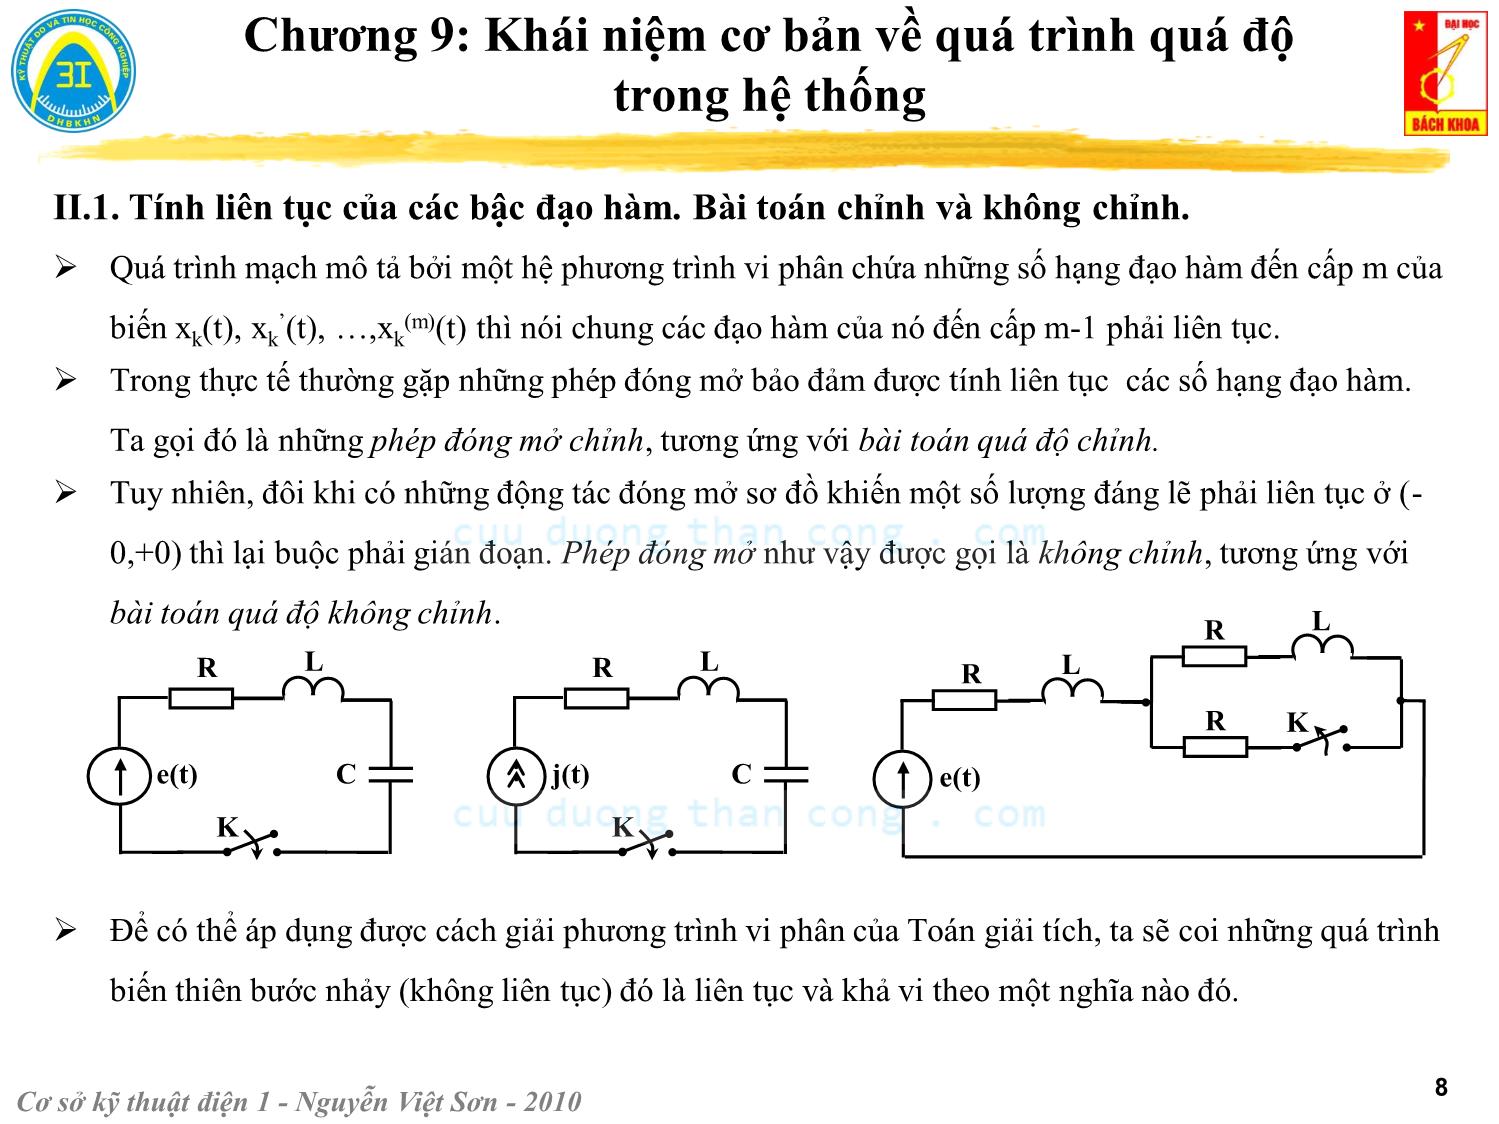 Bài giảng Kỹ thuật điện 1 - Chương 9: Khái niệm cơ bản về quá trình quá độ trong hệ thống - Nguyễn Việt Sơn trang 8